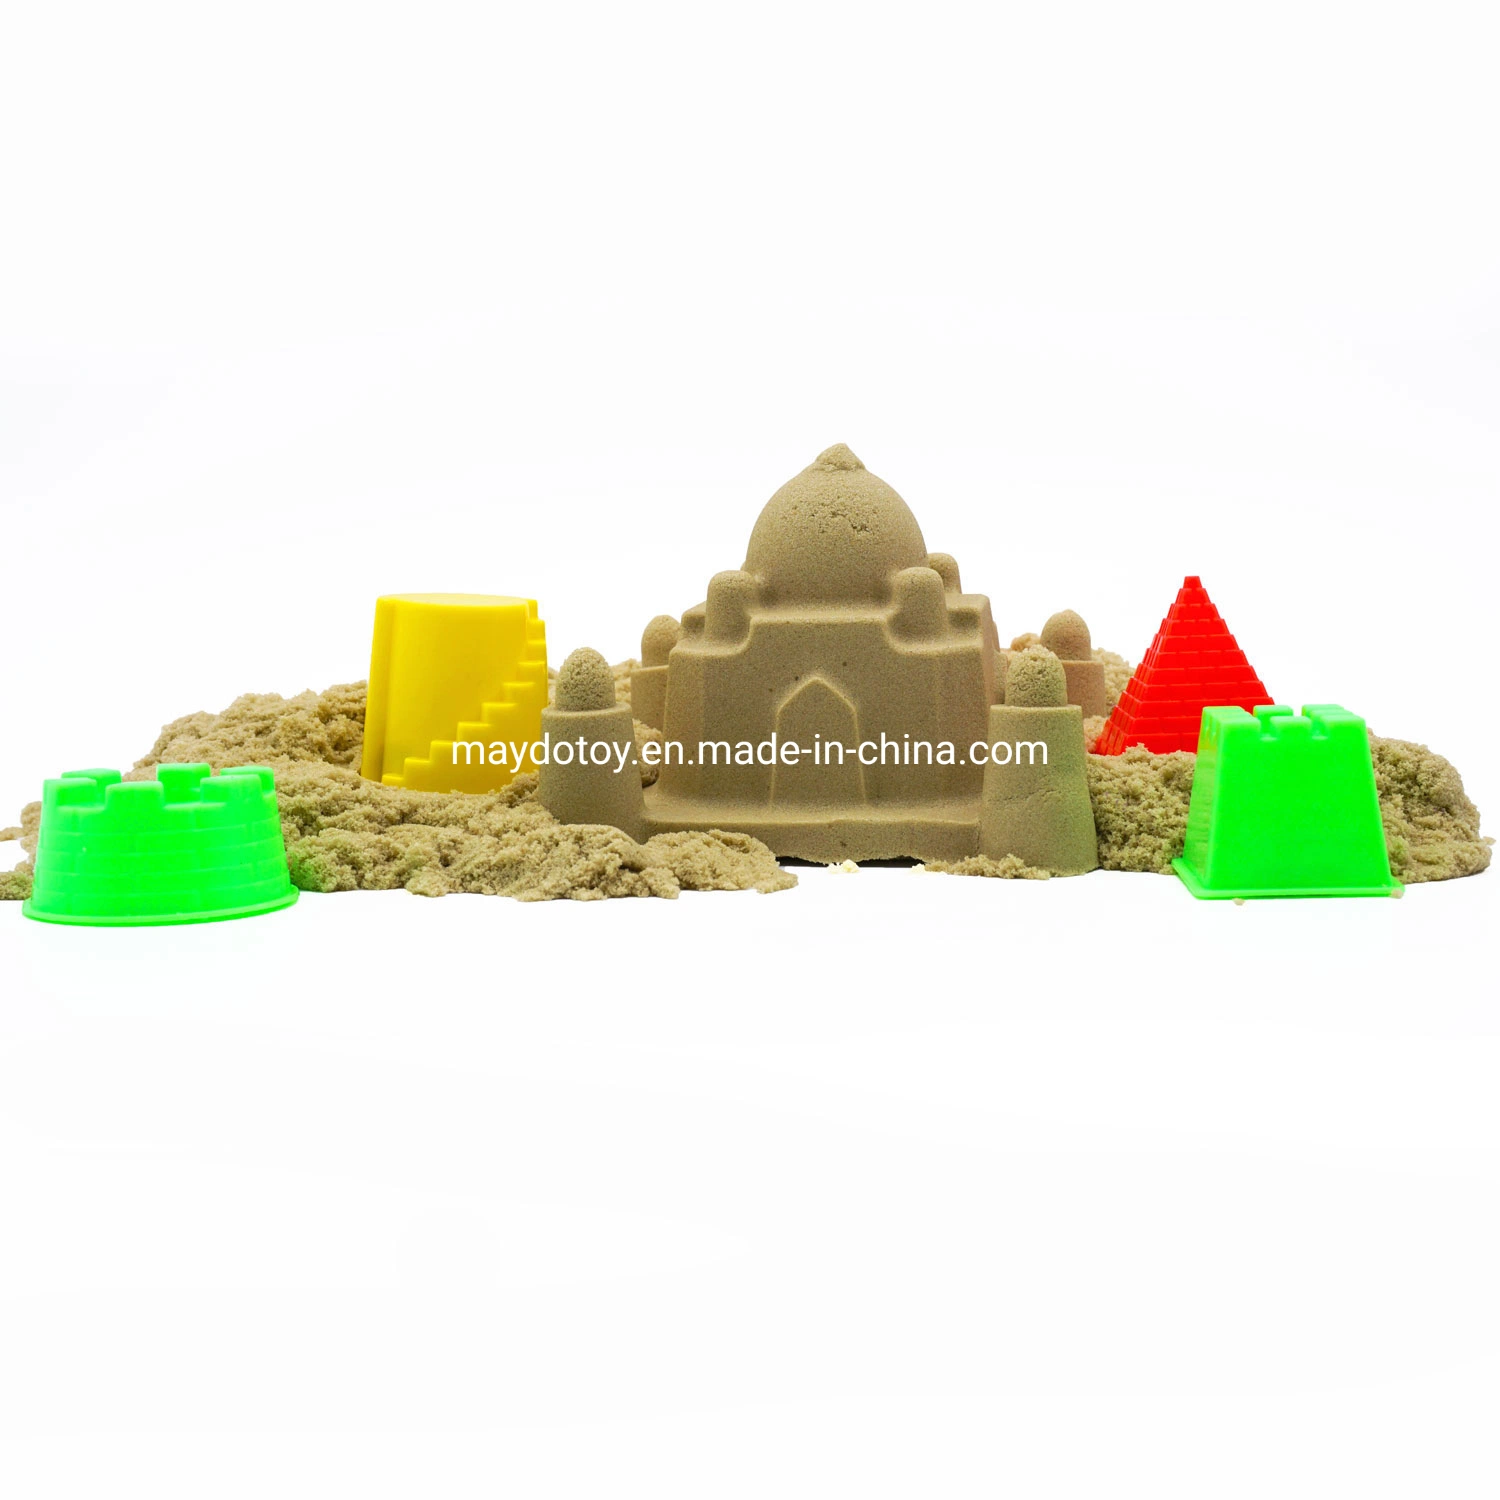 Hochwertige Magie Natursand DIY Kinetic Sand Spielzeug für Kinder Spielen